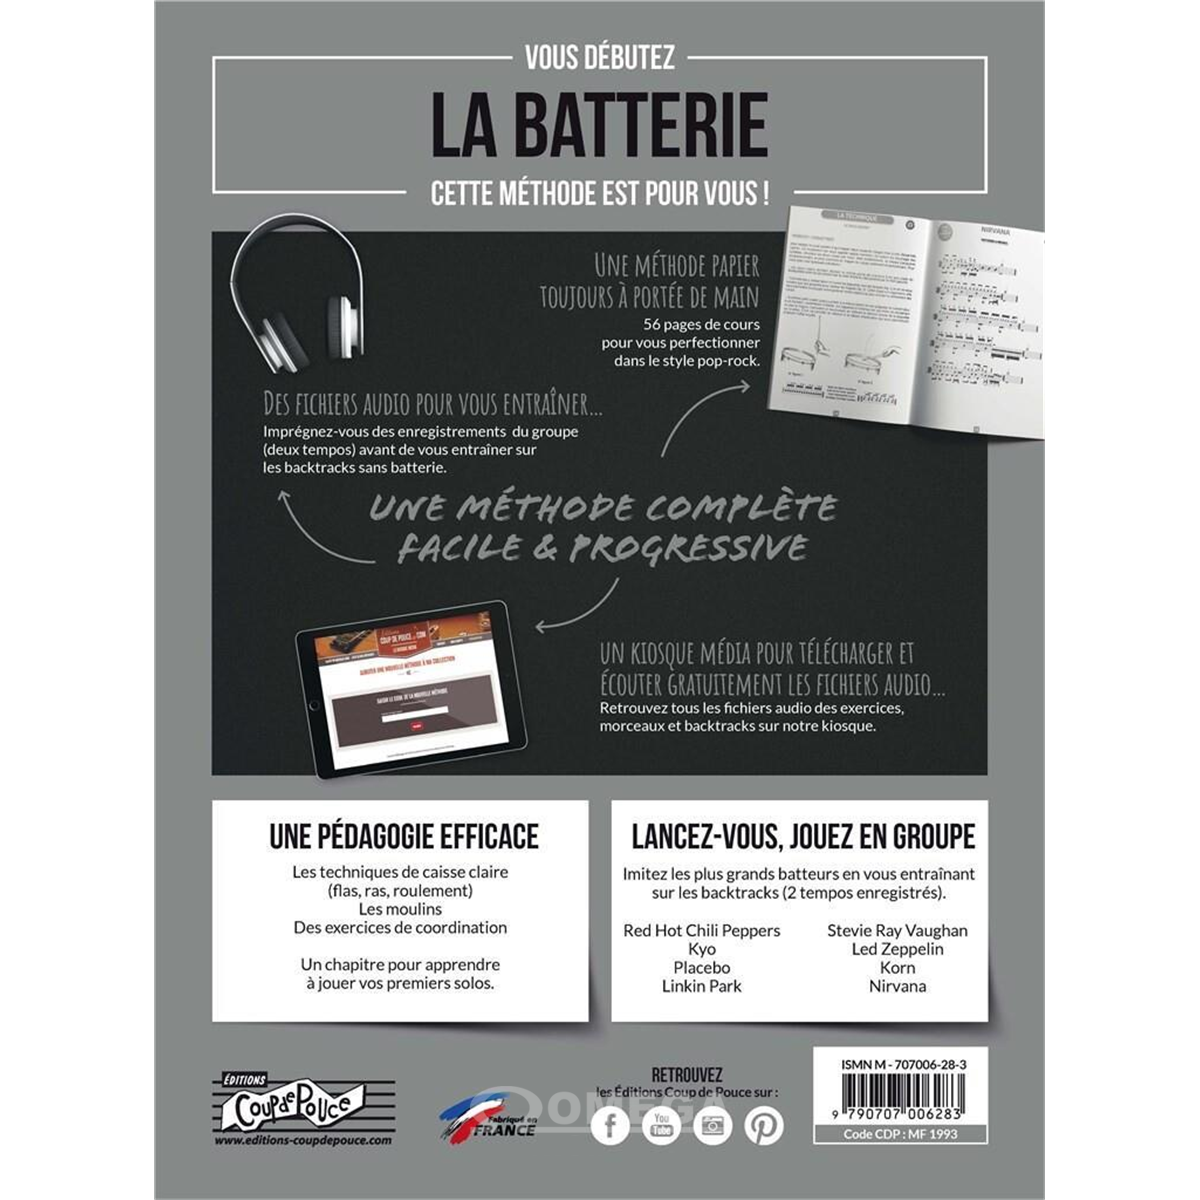 COUP DE POUCE Méthode Batterie Vol 3